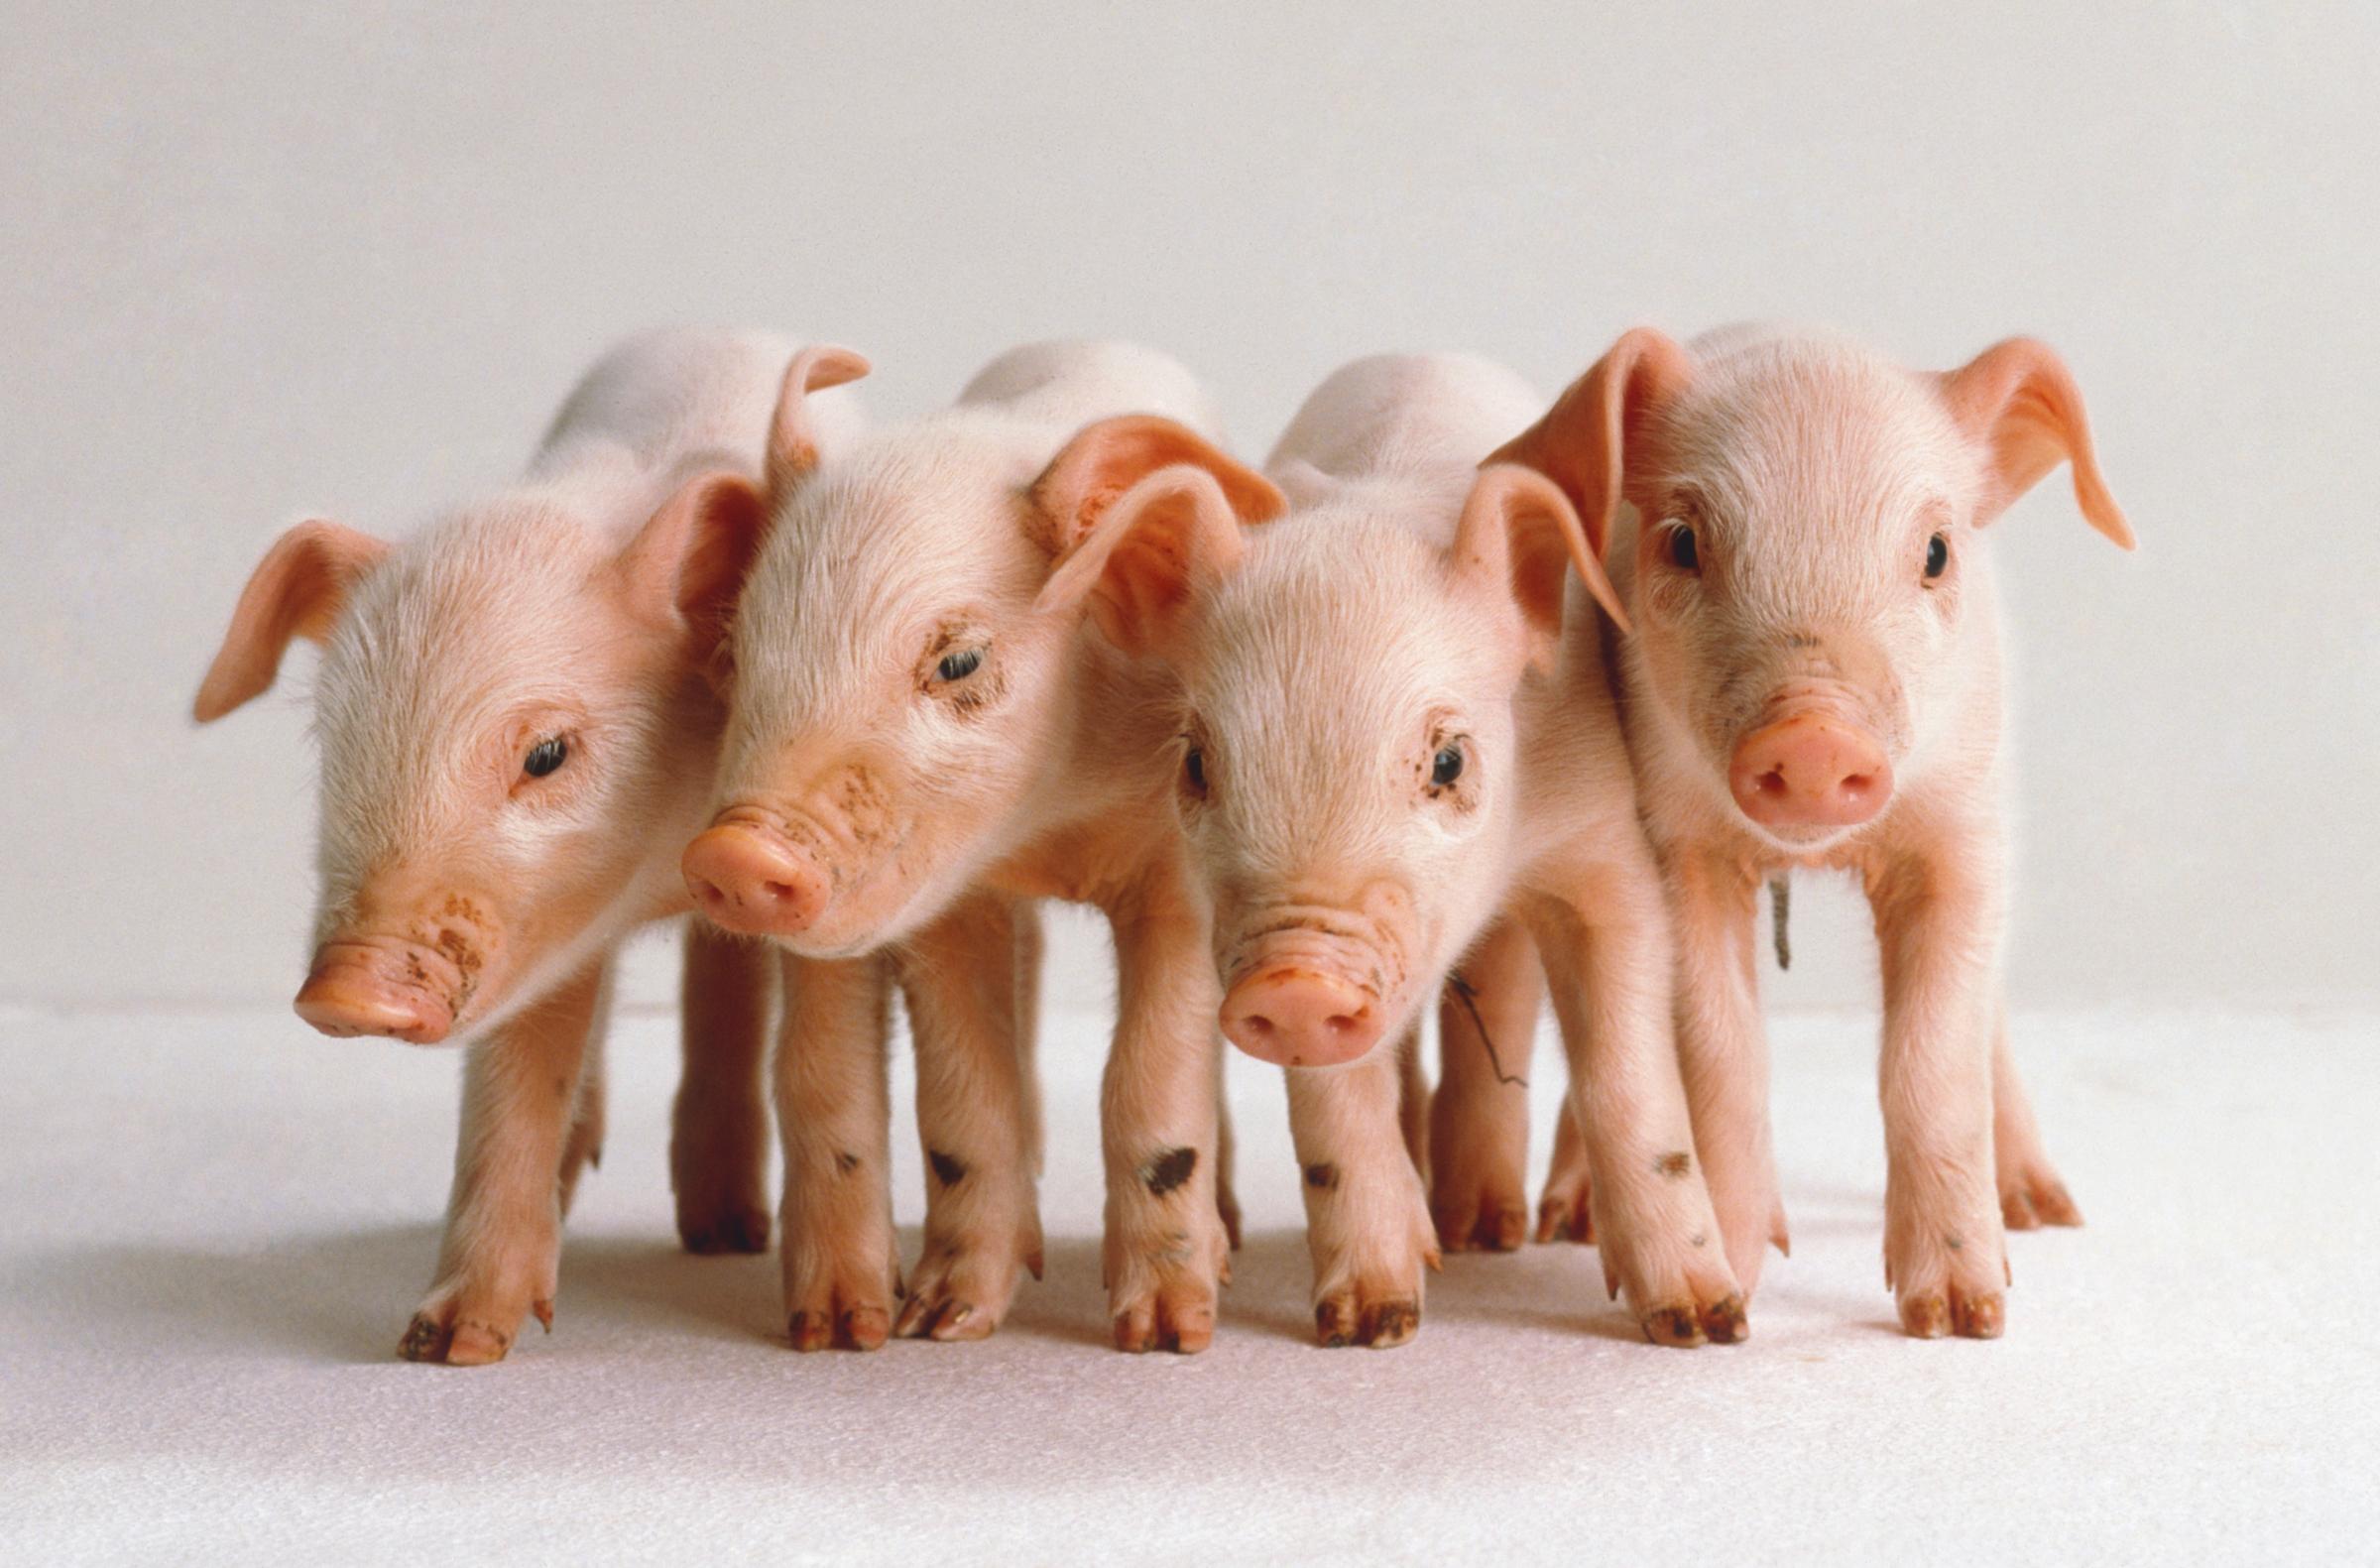 Four newborn pink piglets.